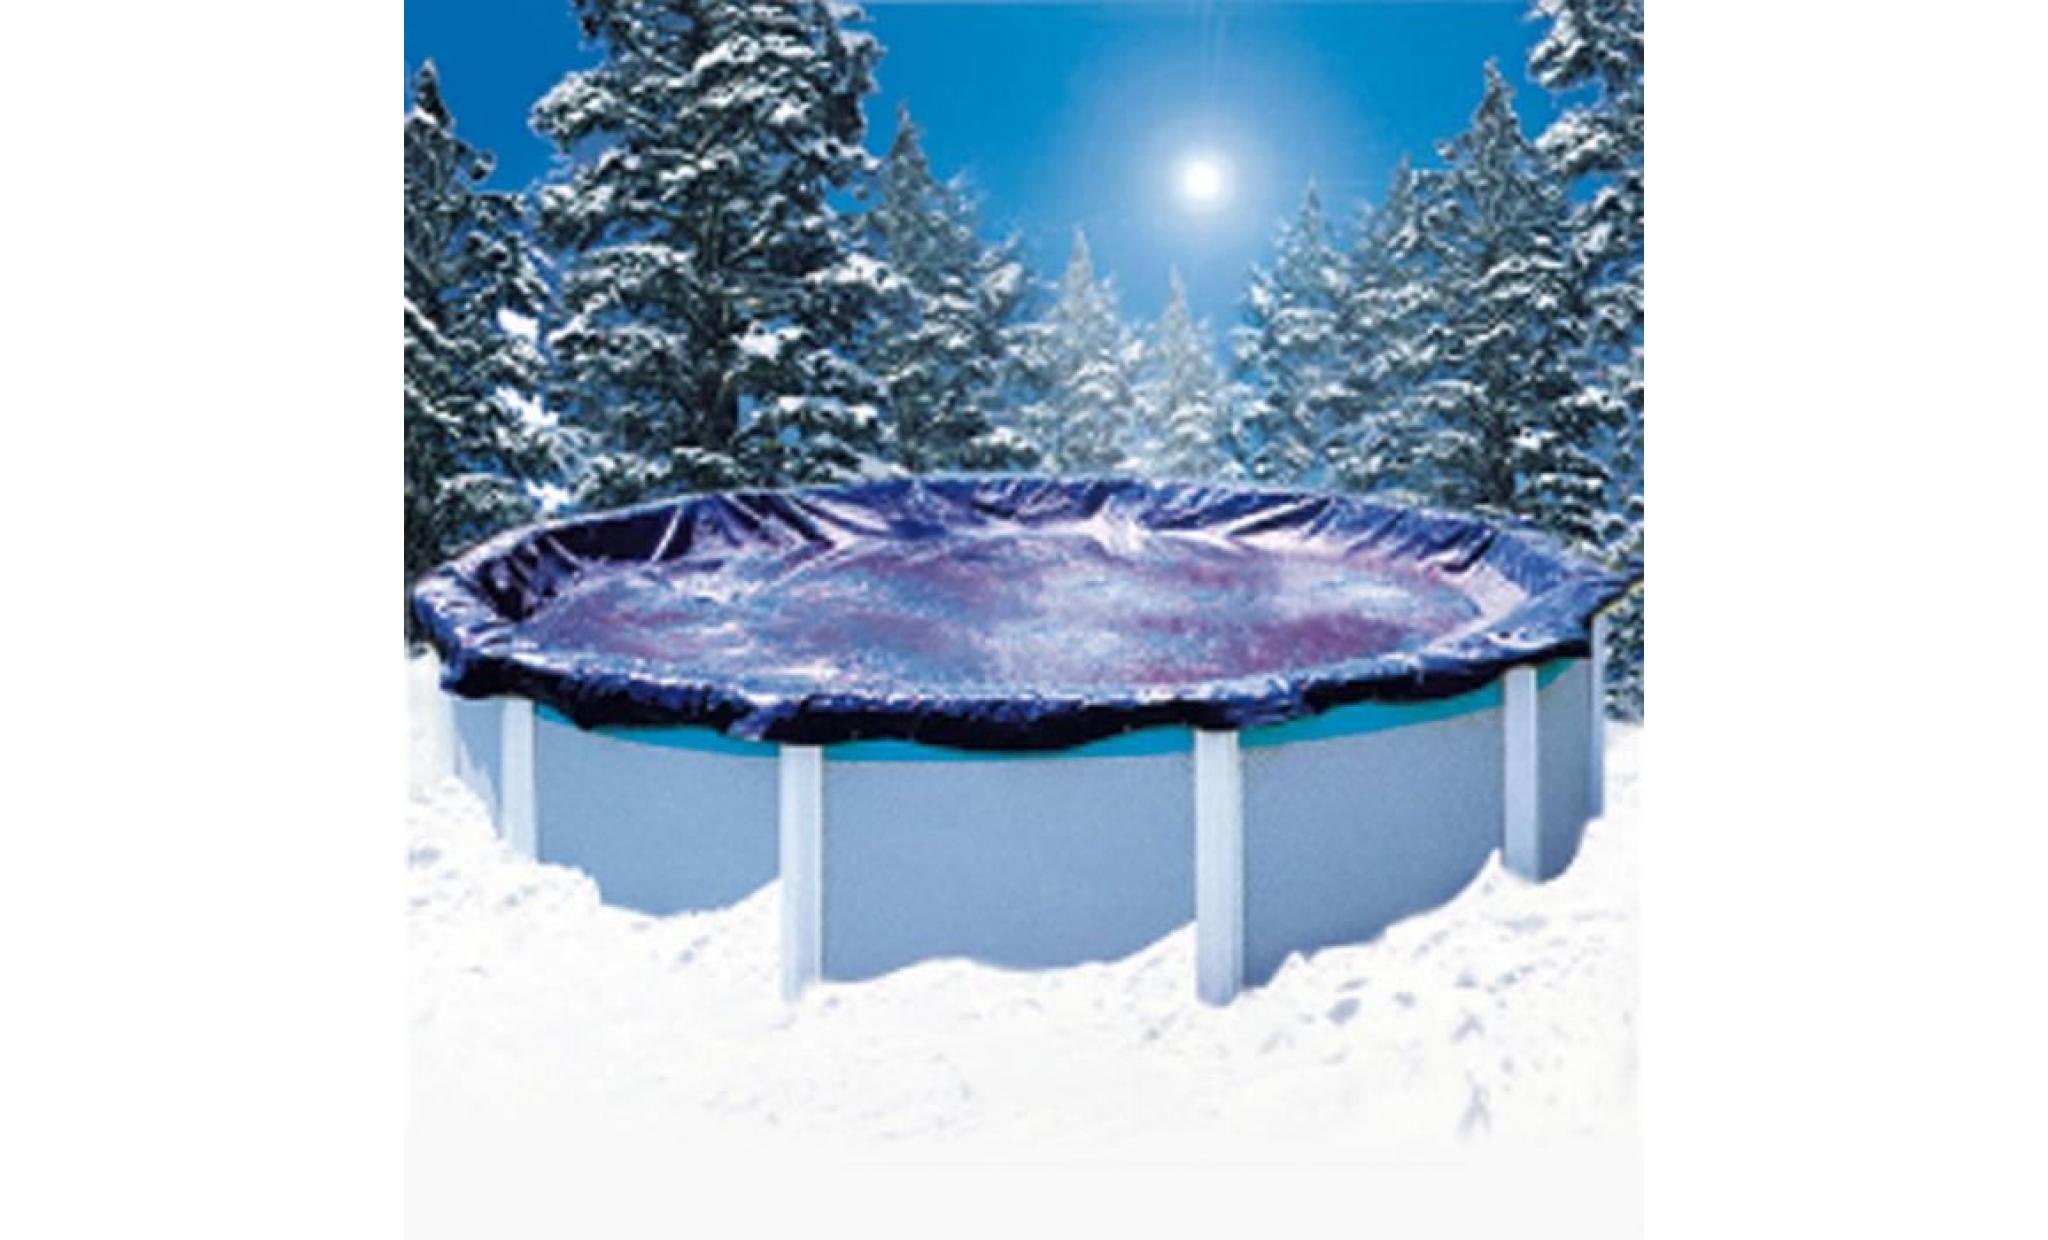 Couverture d'hiver super guard pour piscine hors sol - 4,57 x 8,22 m